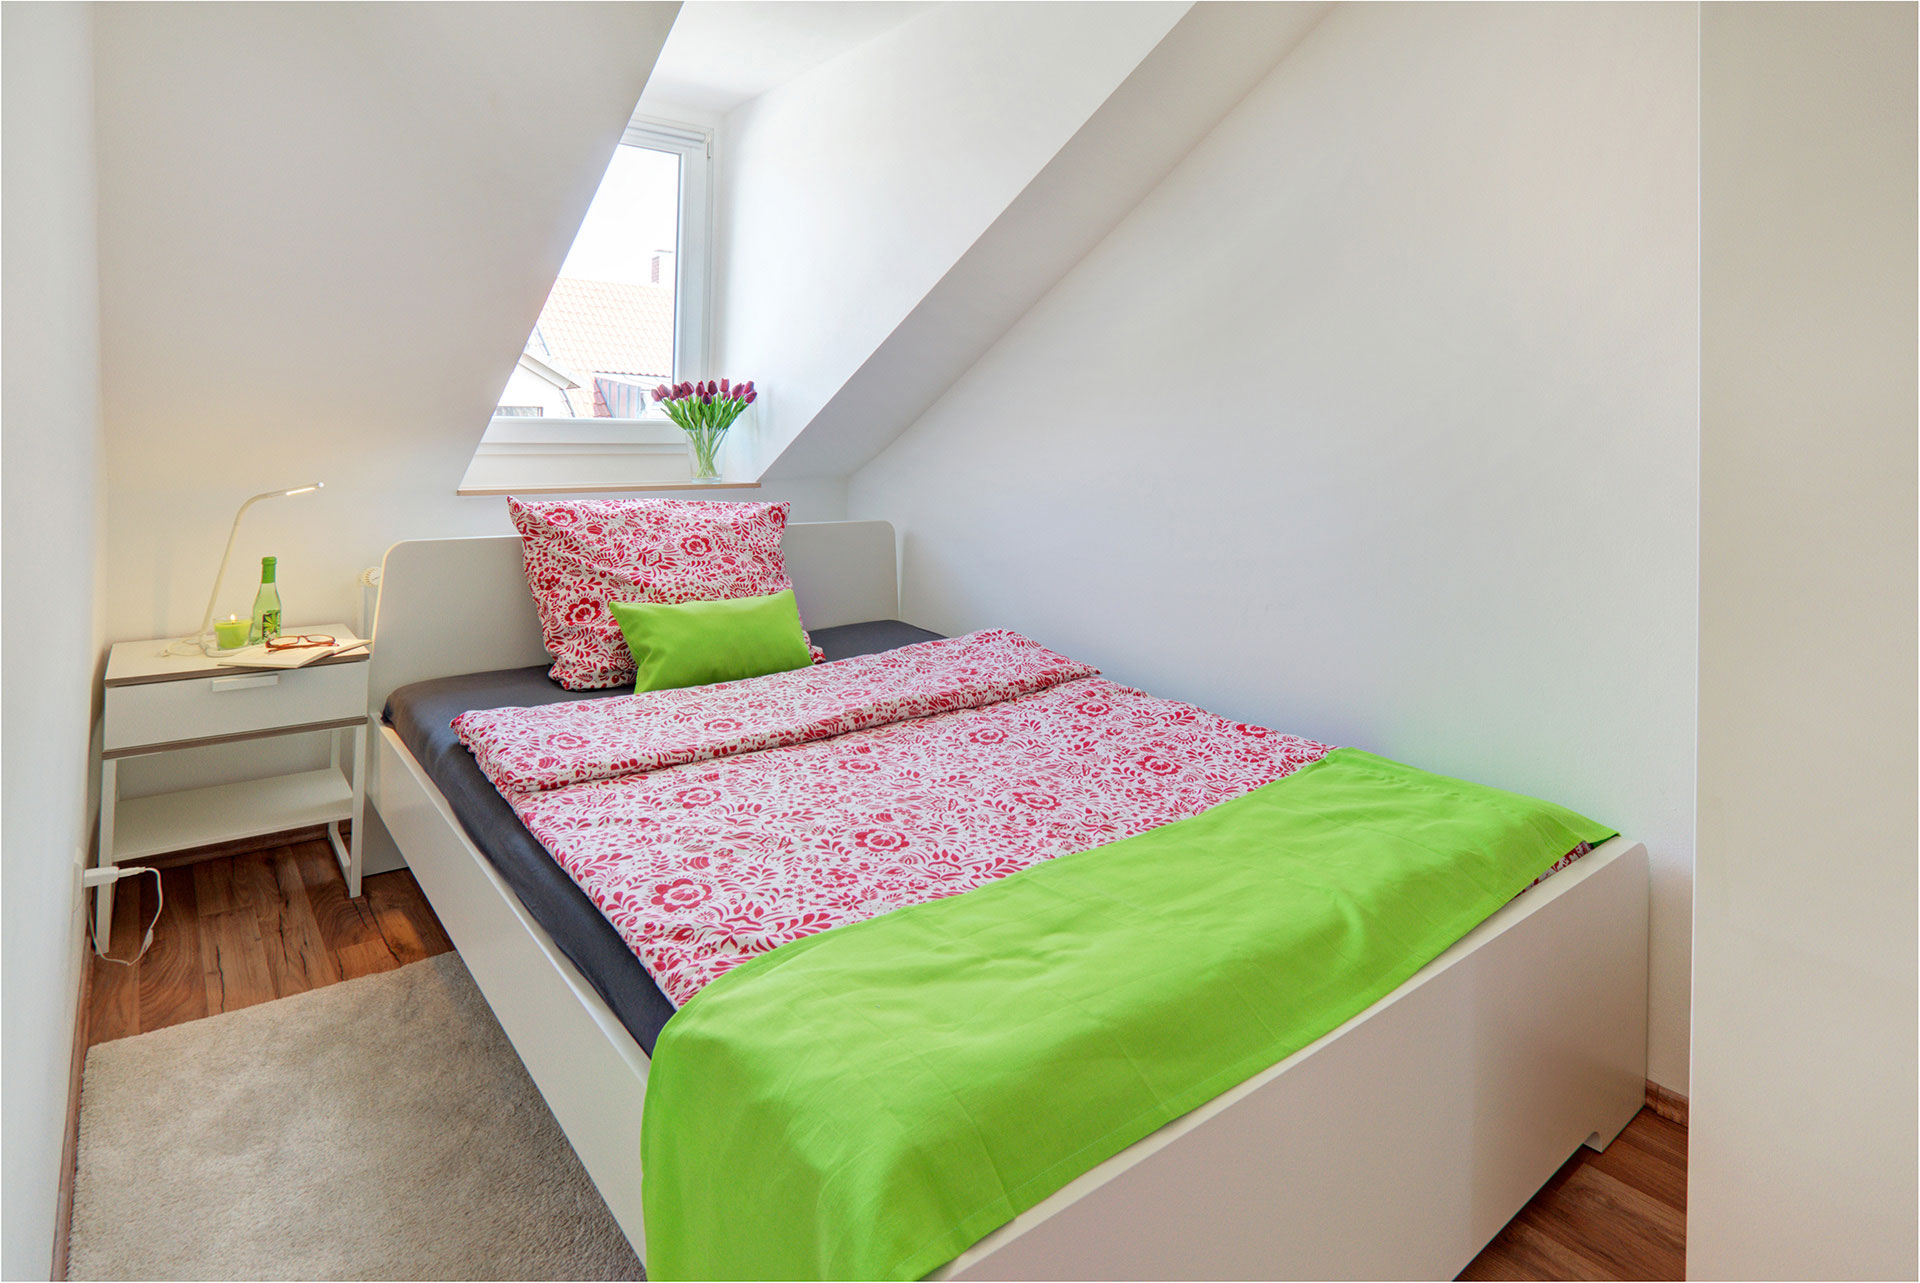 fotografin dekoriert grosses einzelbett mit grünem bettläufer und kissen nachher